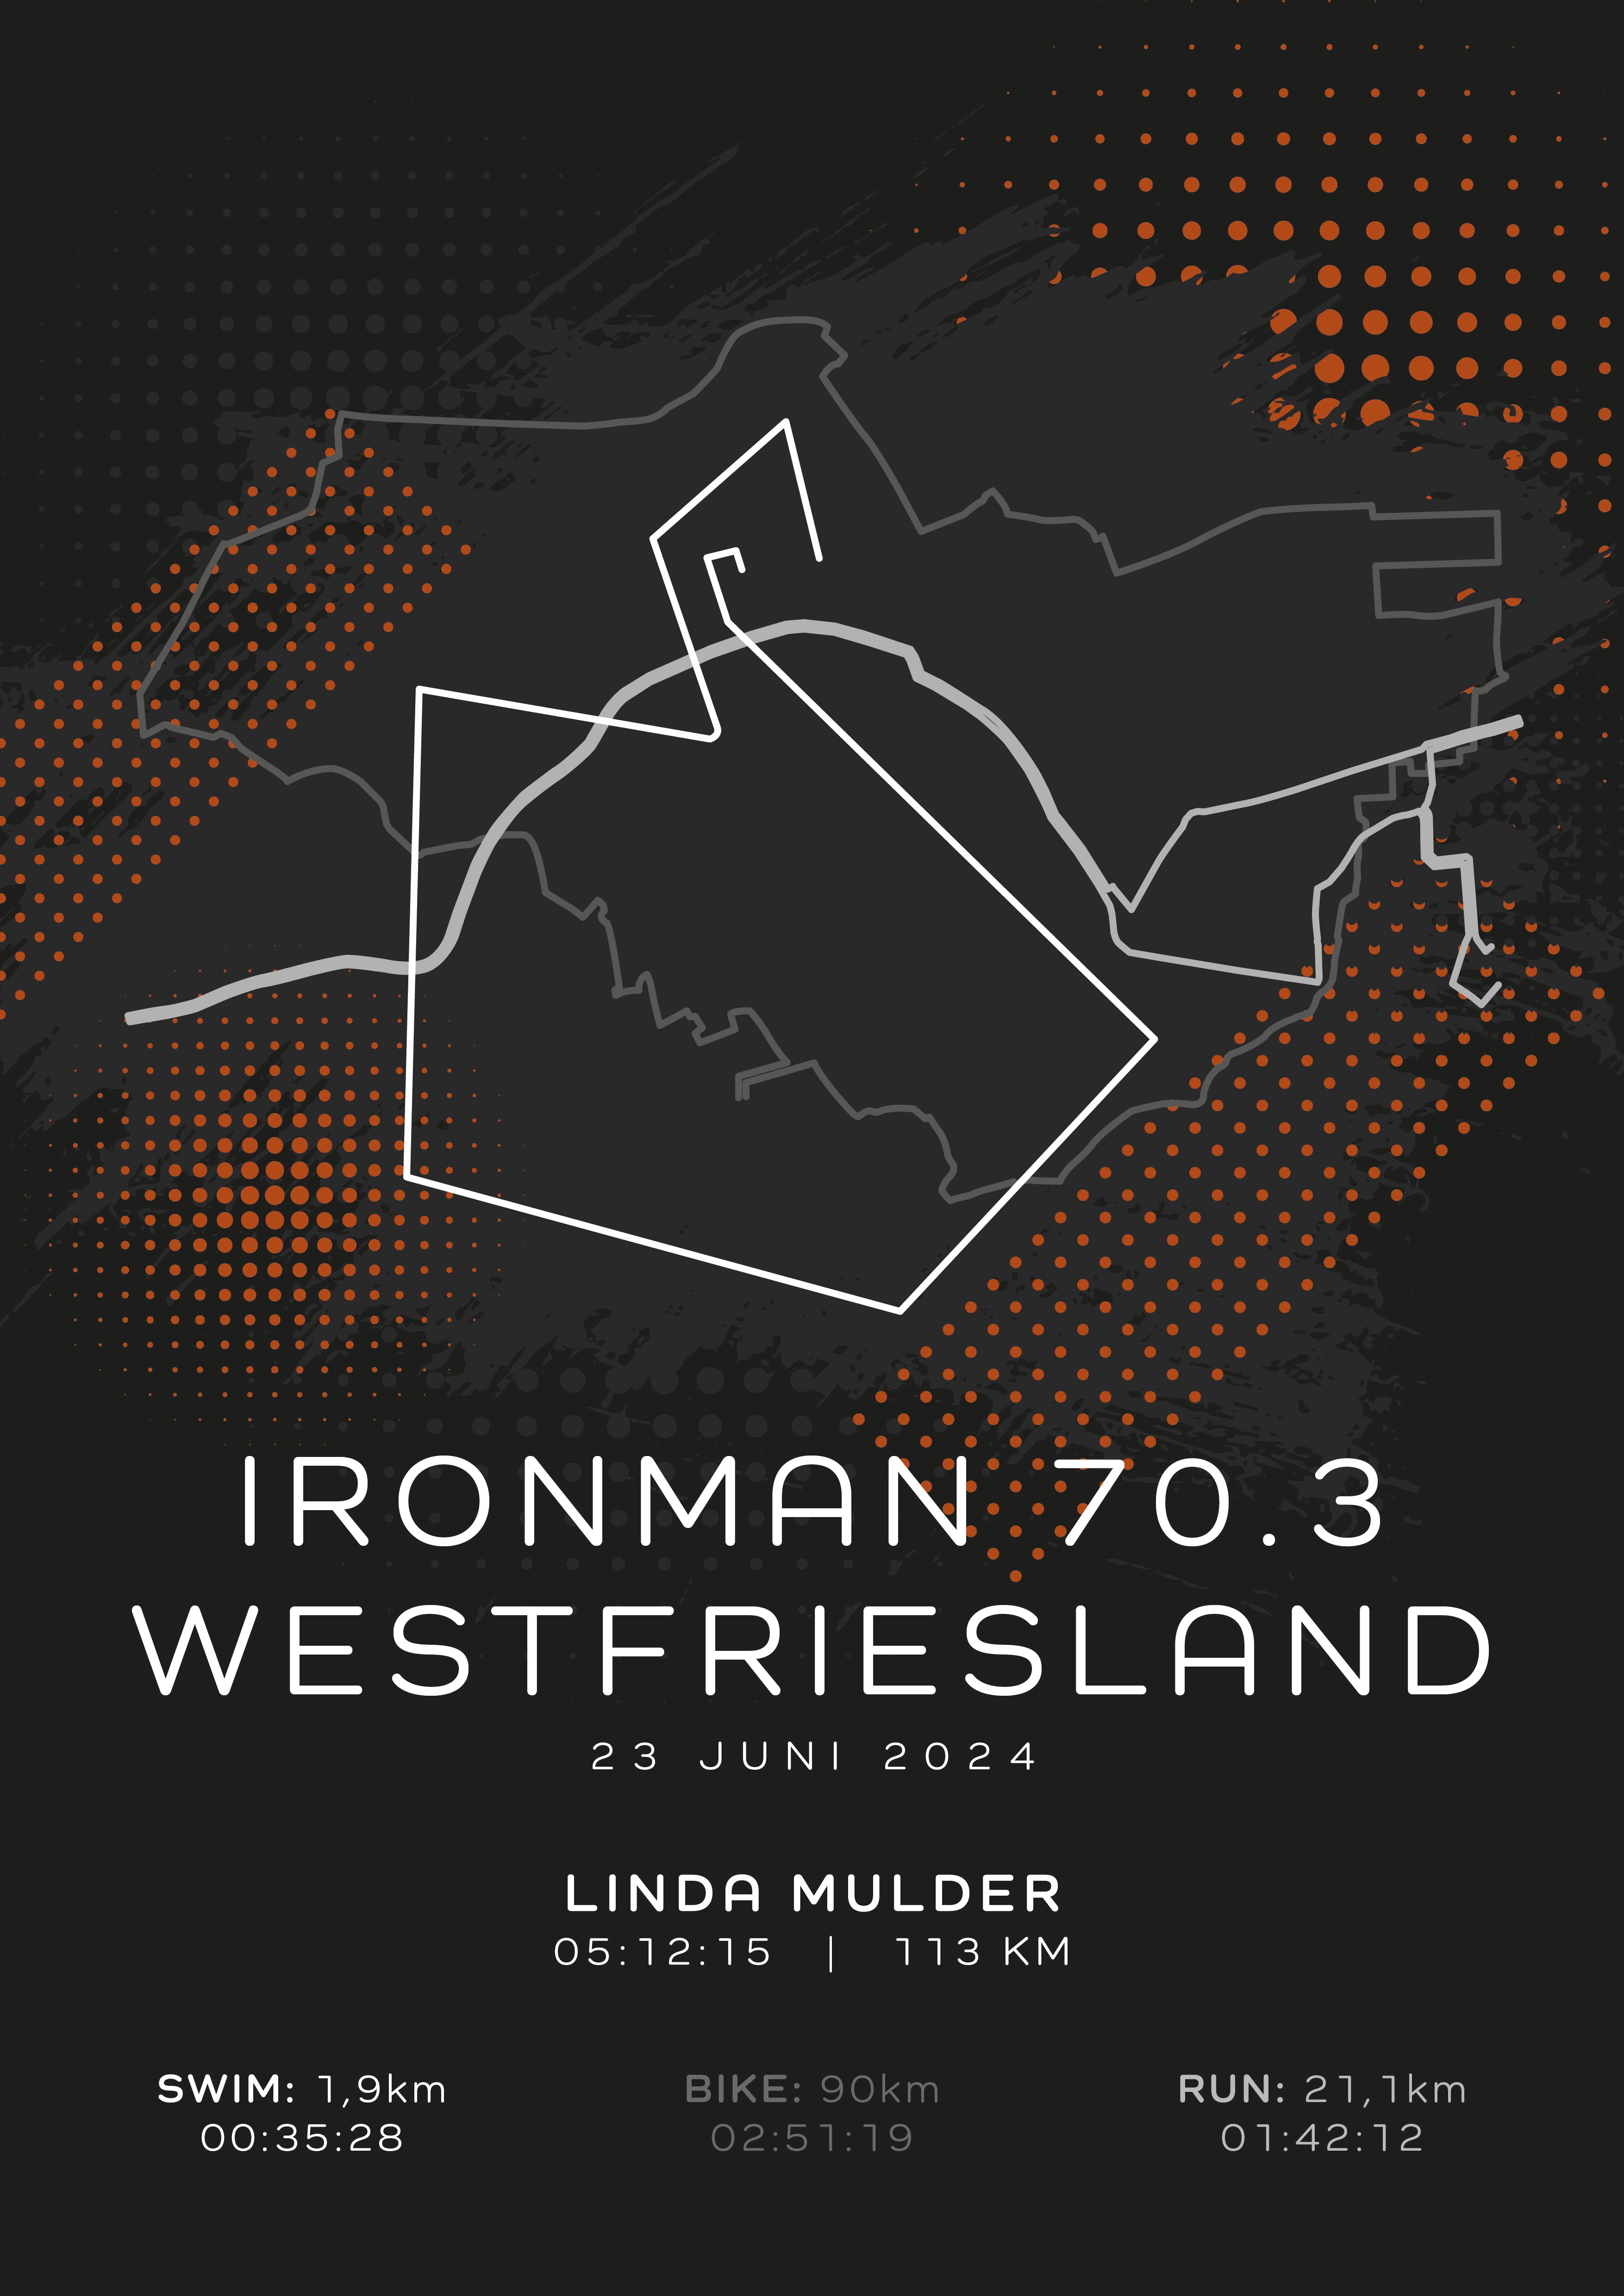 Ironman 70.3 Westfriesland - Modern Dark - Poster